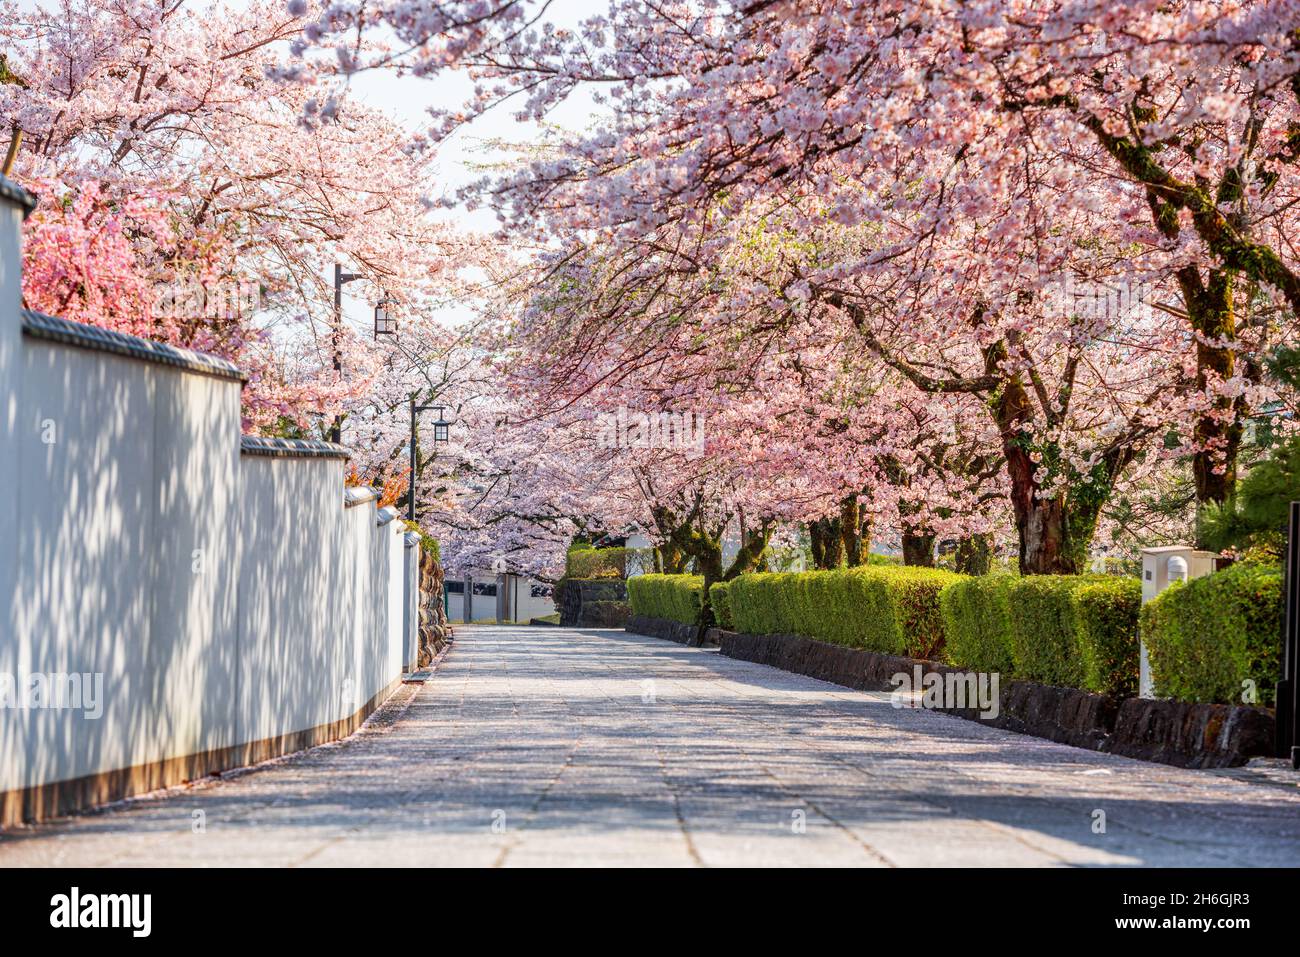 Shizuoka, le strade della città vecchia giapponese con fiori di ciliegio nella stagione primaverile. Foto Stock